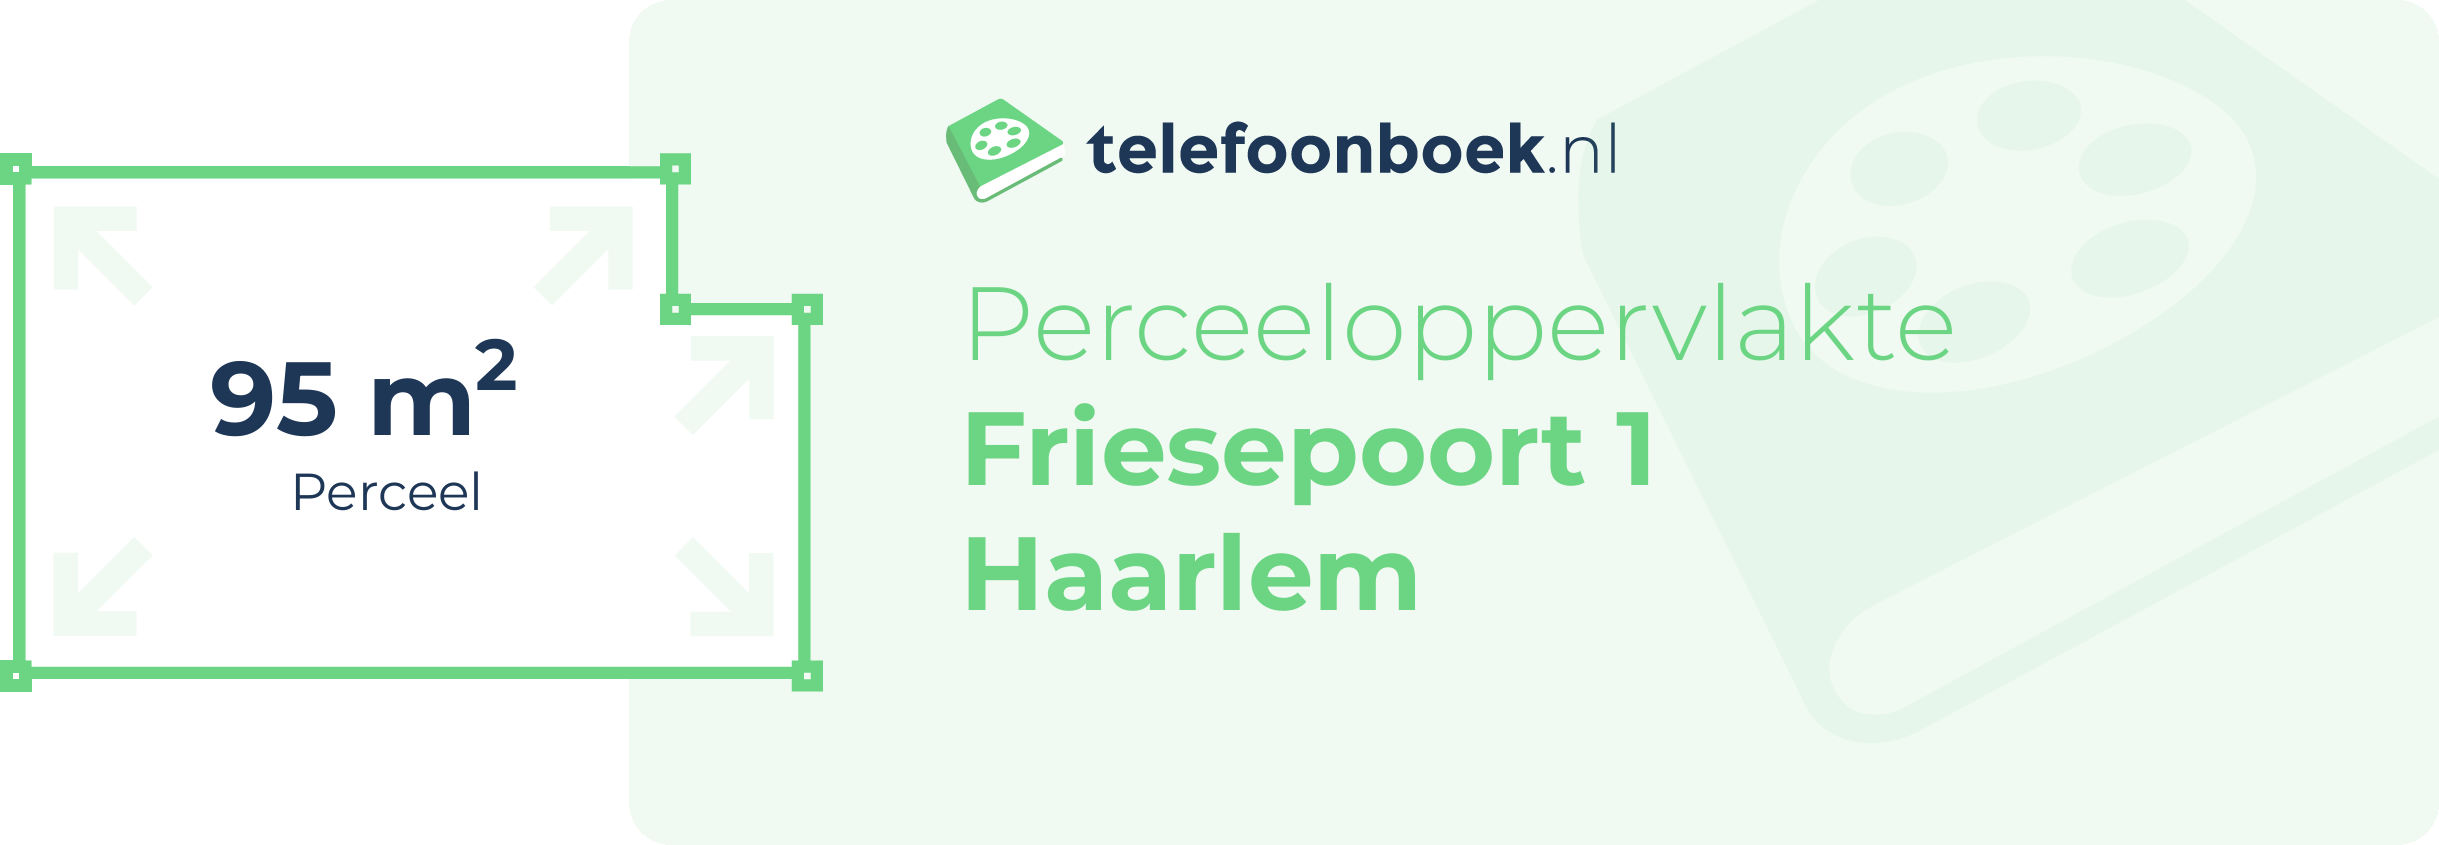 Perceeloppervlakte Friesepoort 1 Haarlem